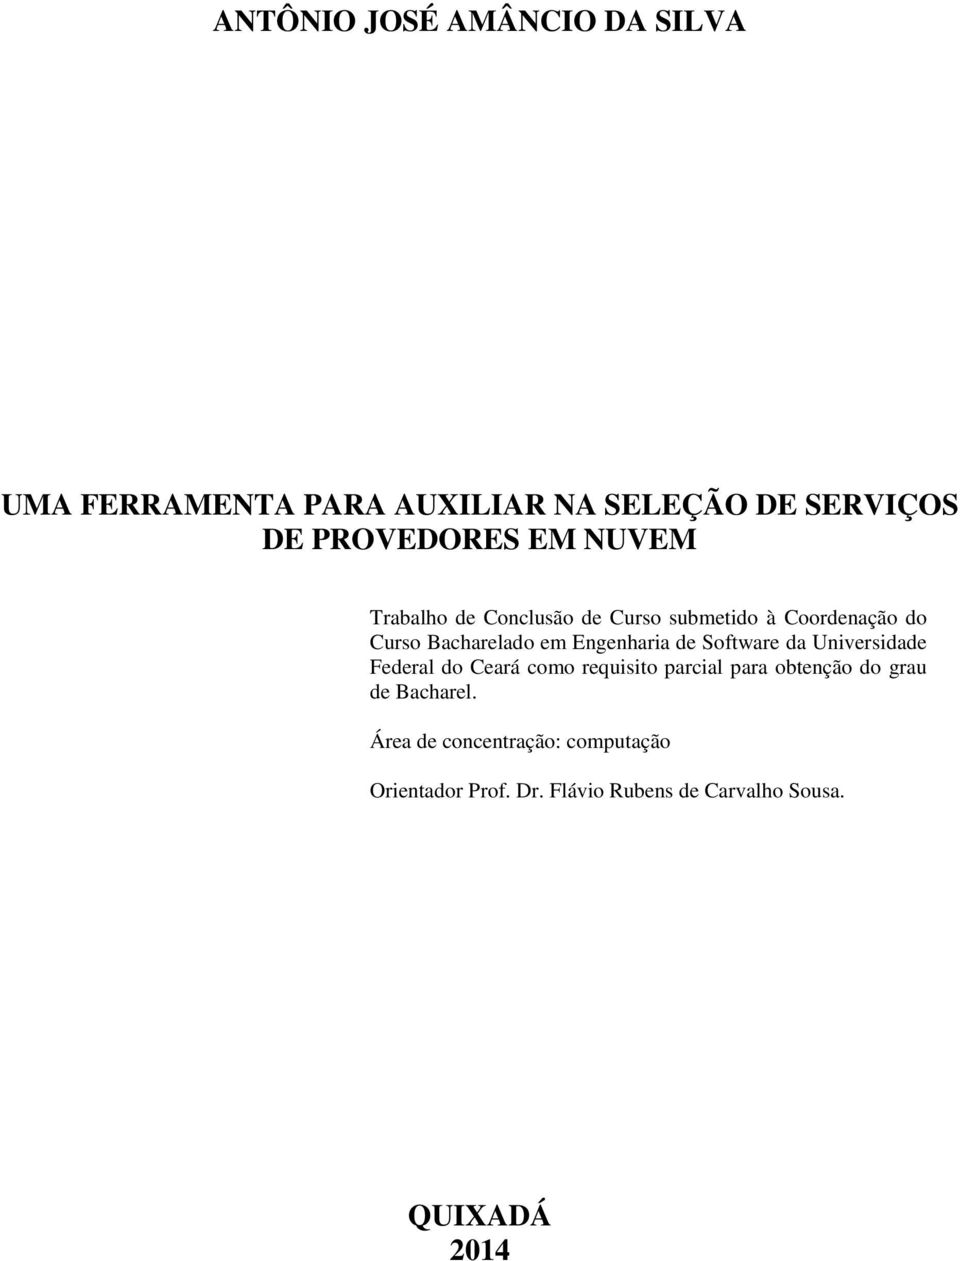 Software da Universidade Federal do Ceará como requisito parcial para obtenção do grau de Bacharel.